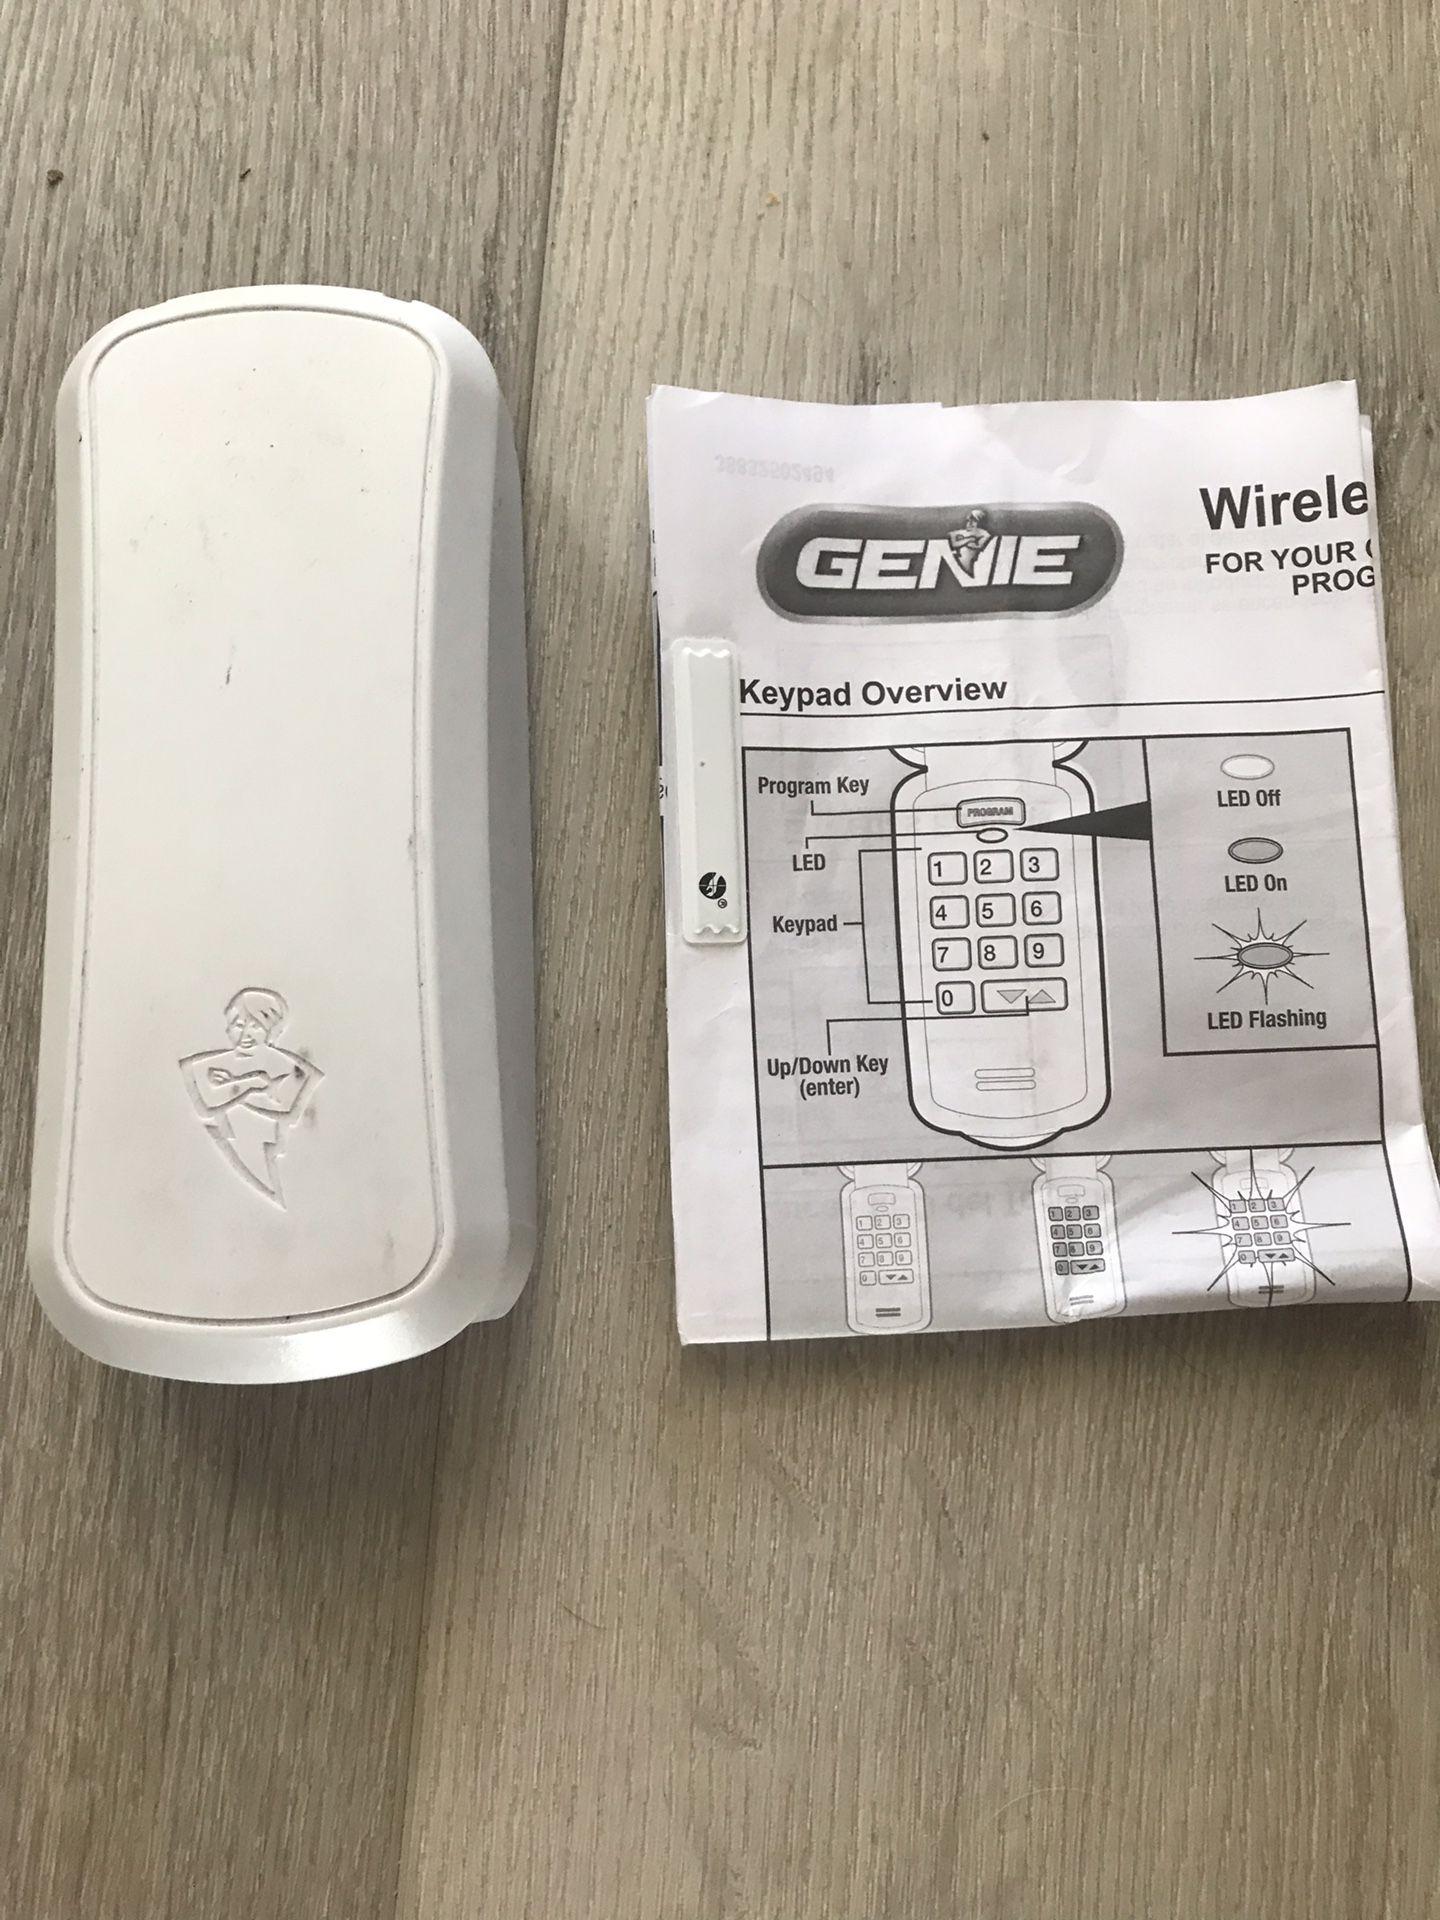 Genie wireless garage door opener